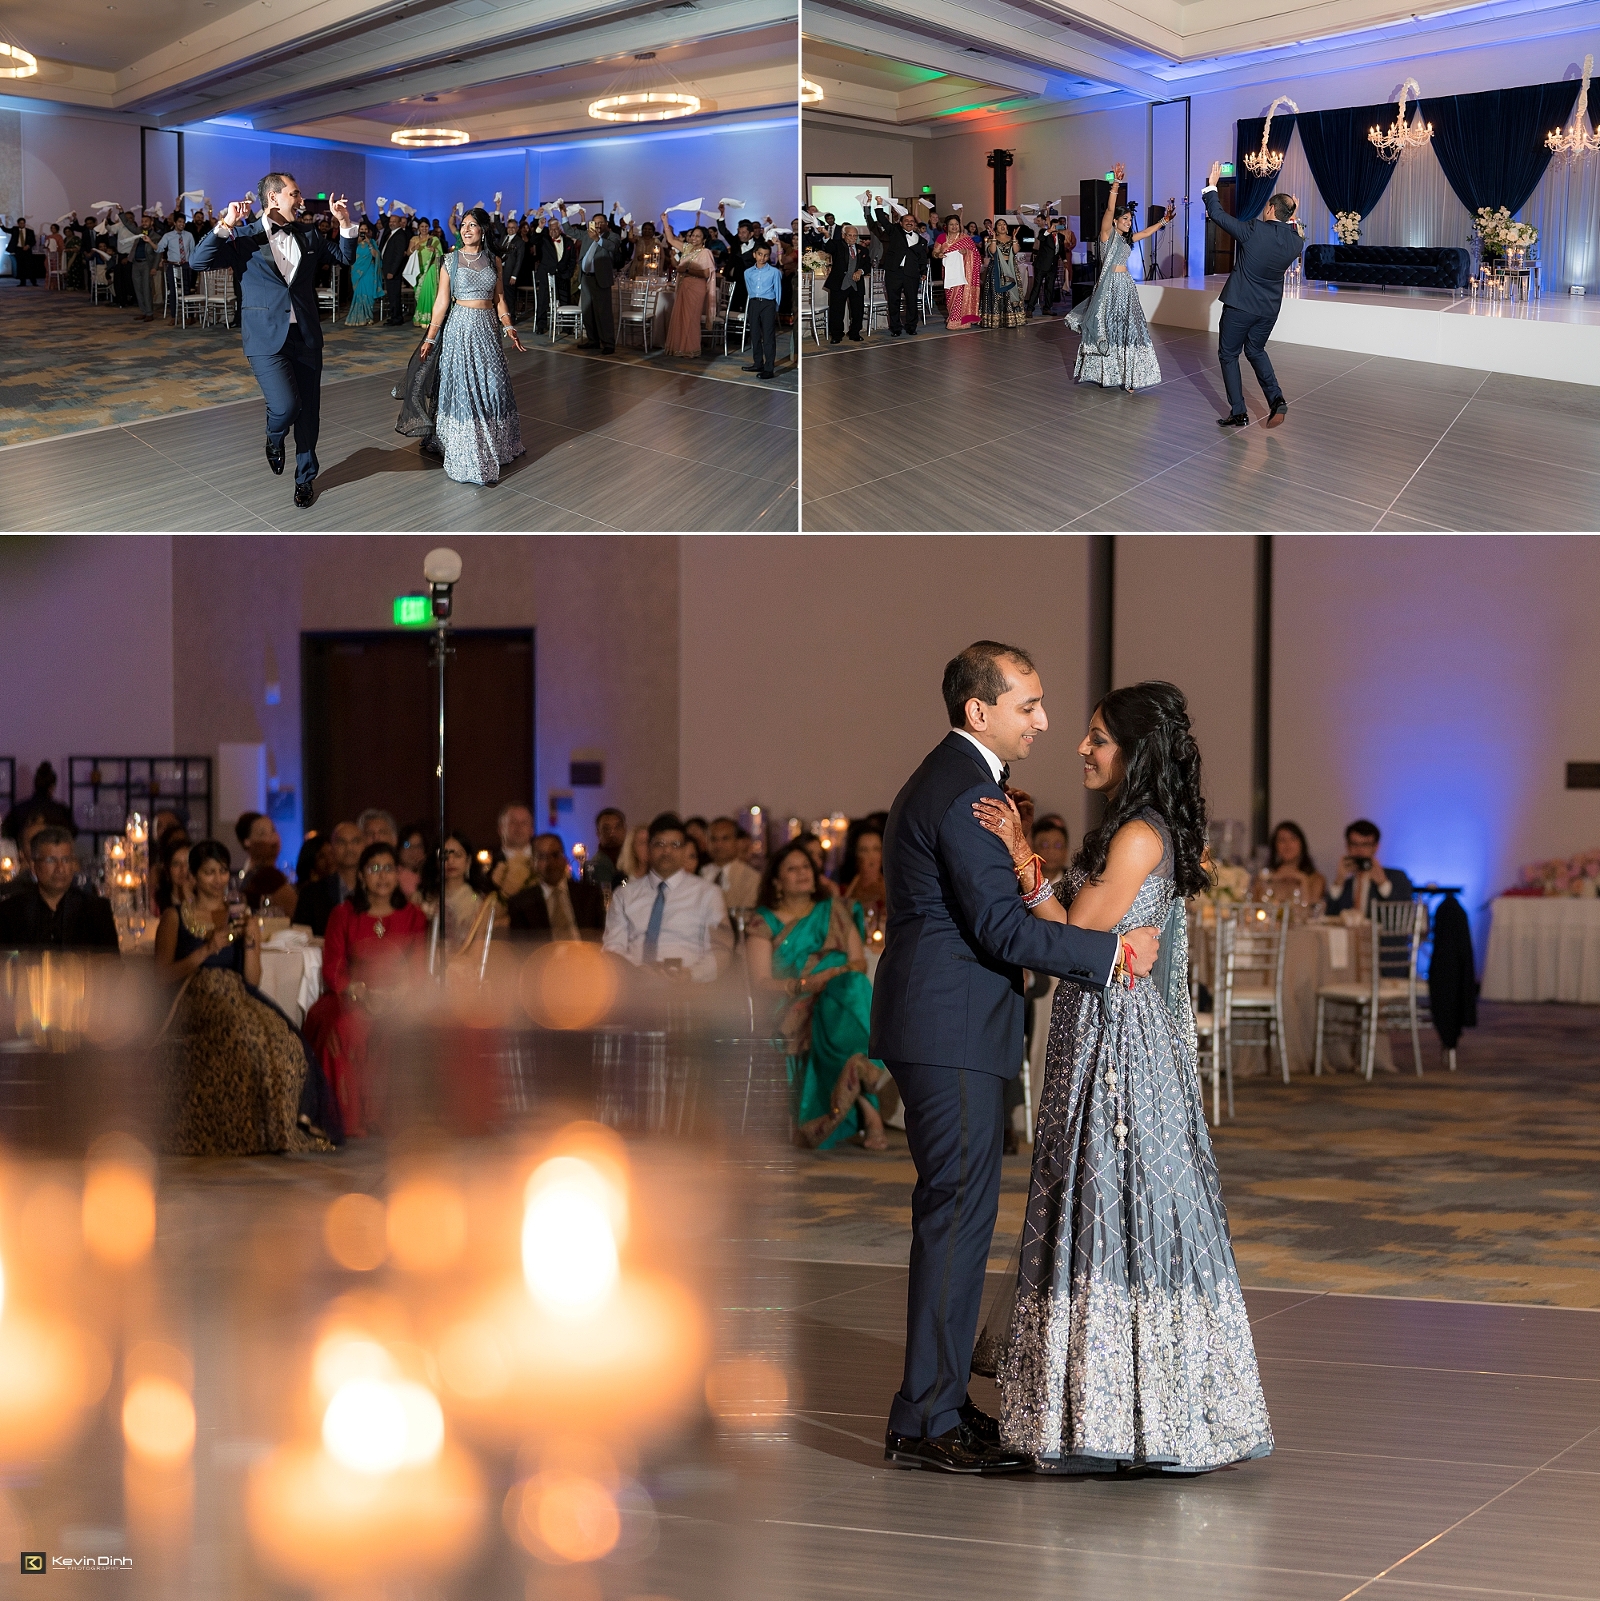 Indian wedding reception at Hilton Santa Barbara